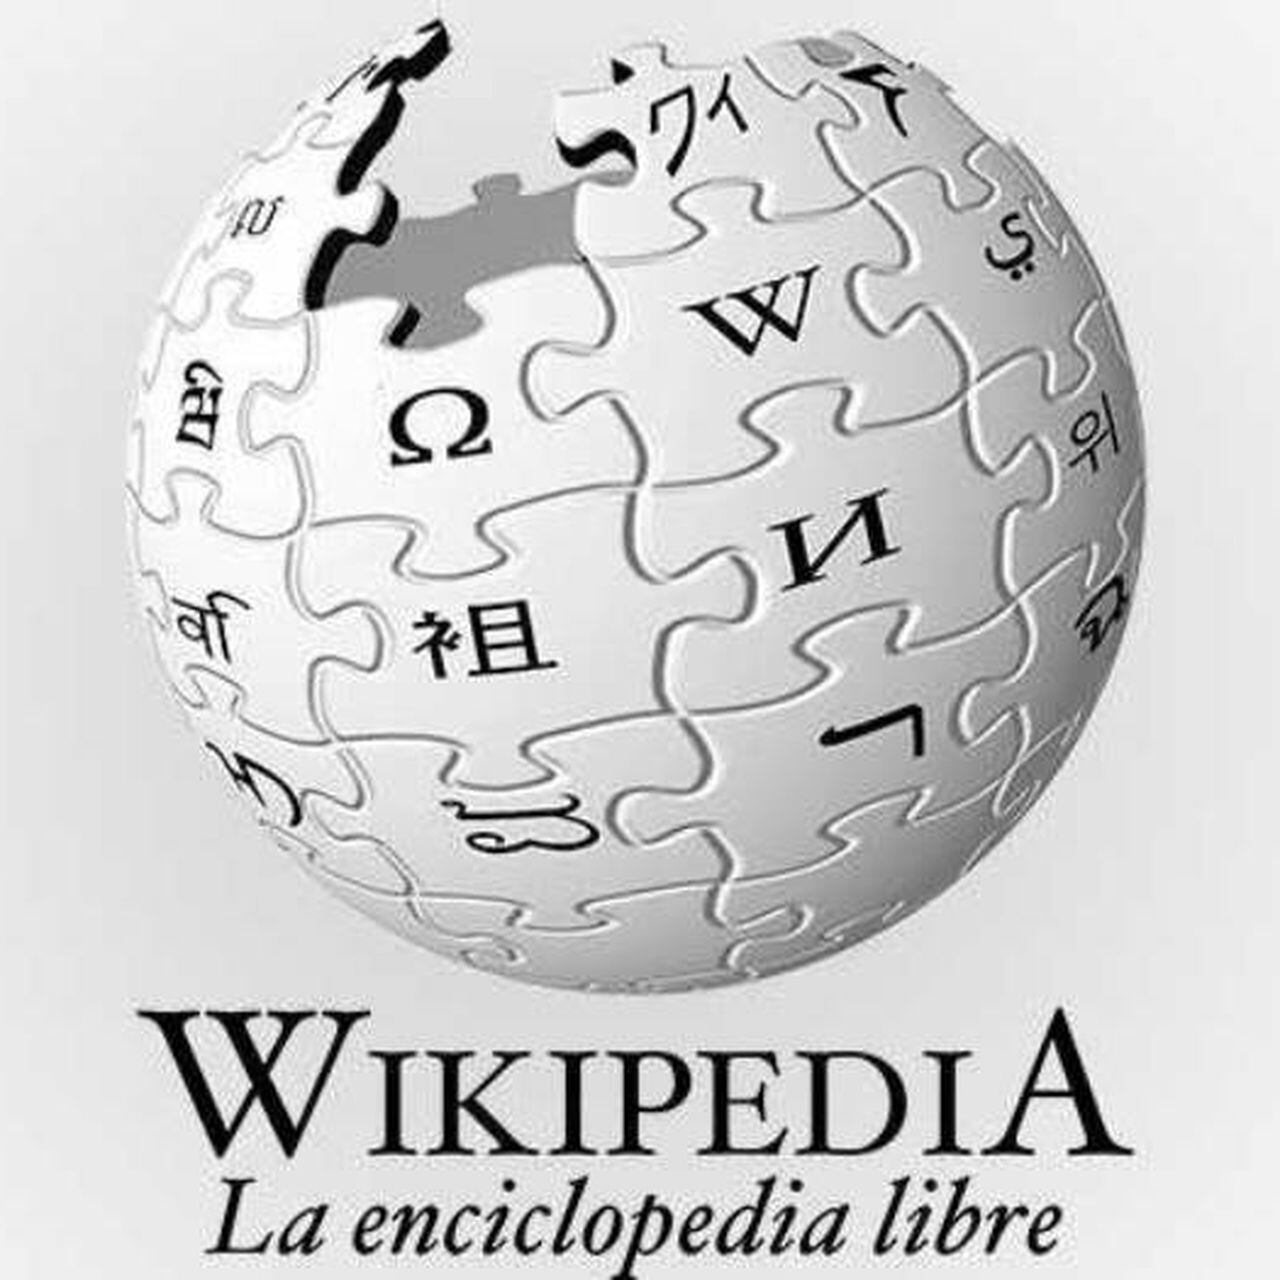 Cinturón de seguridad - Wikipedia, la enciclopedia libre